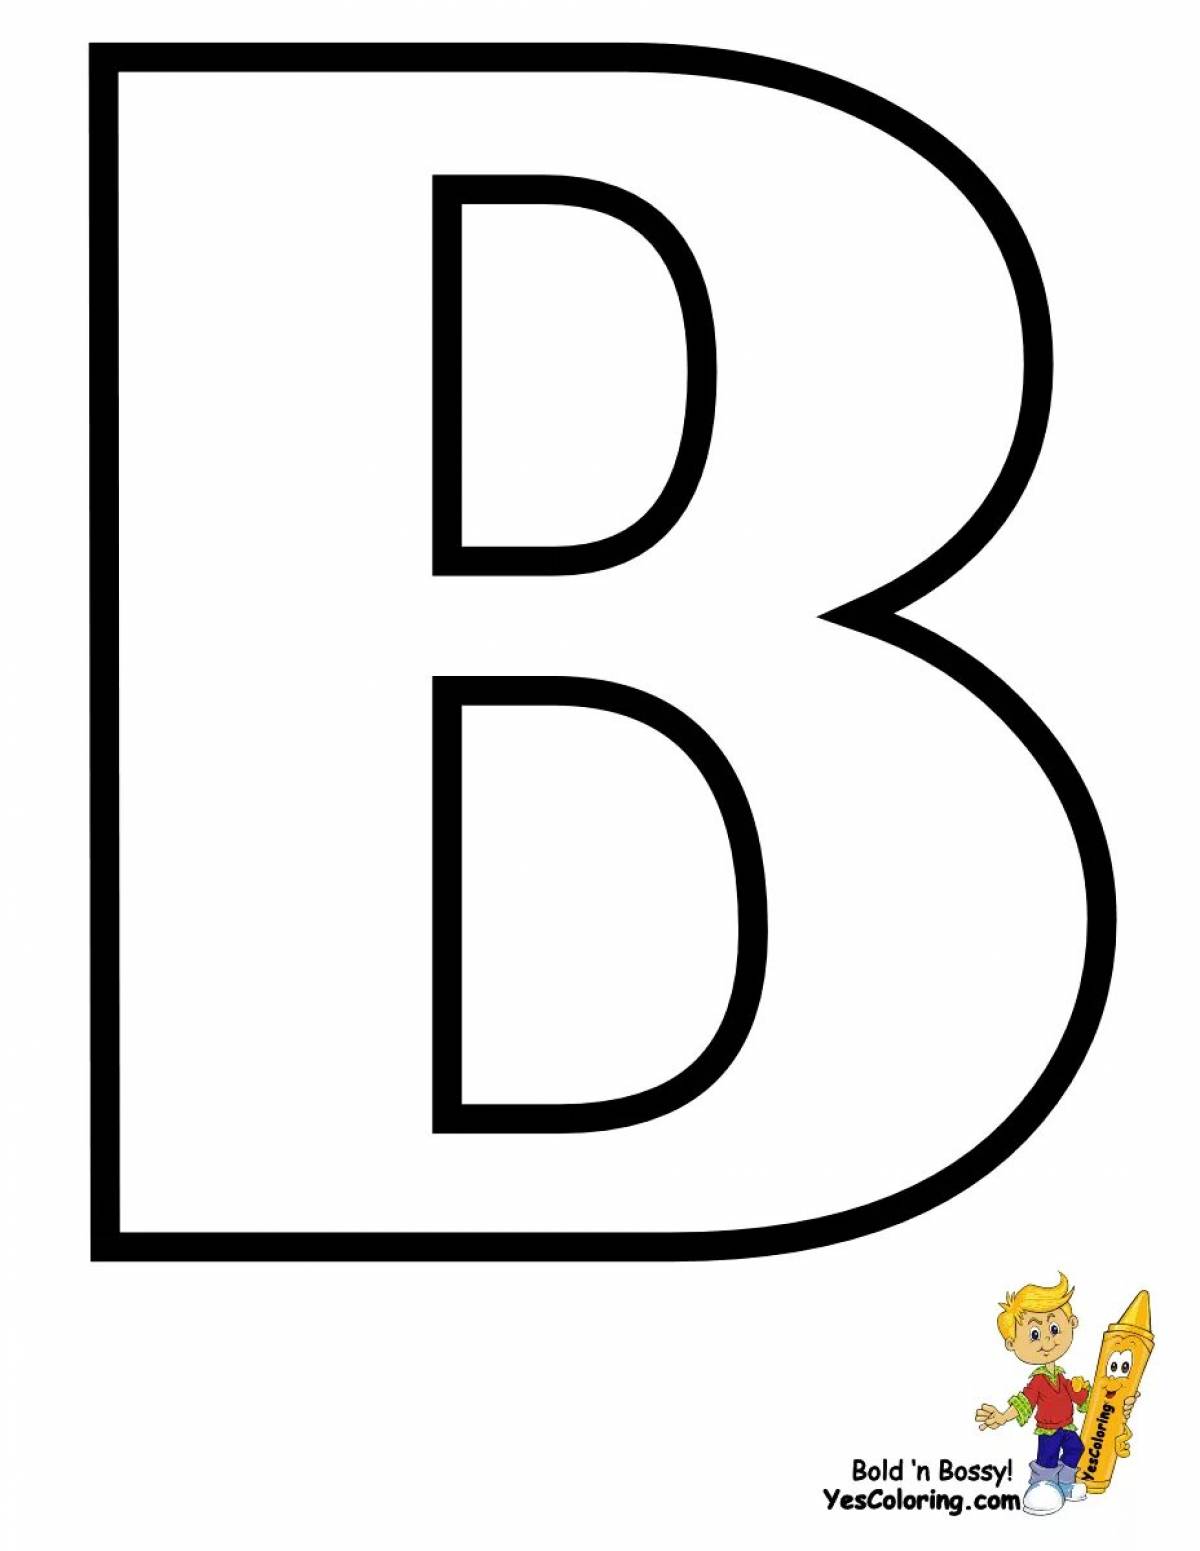 Раскраска творческая буква b